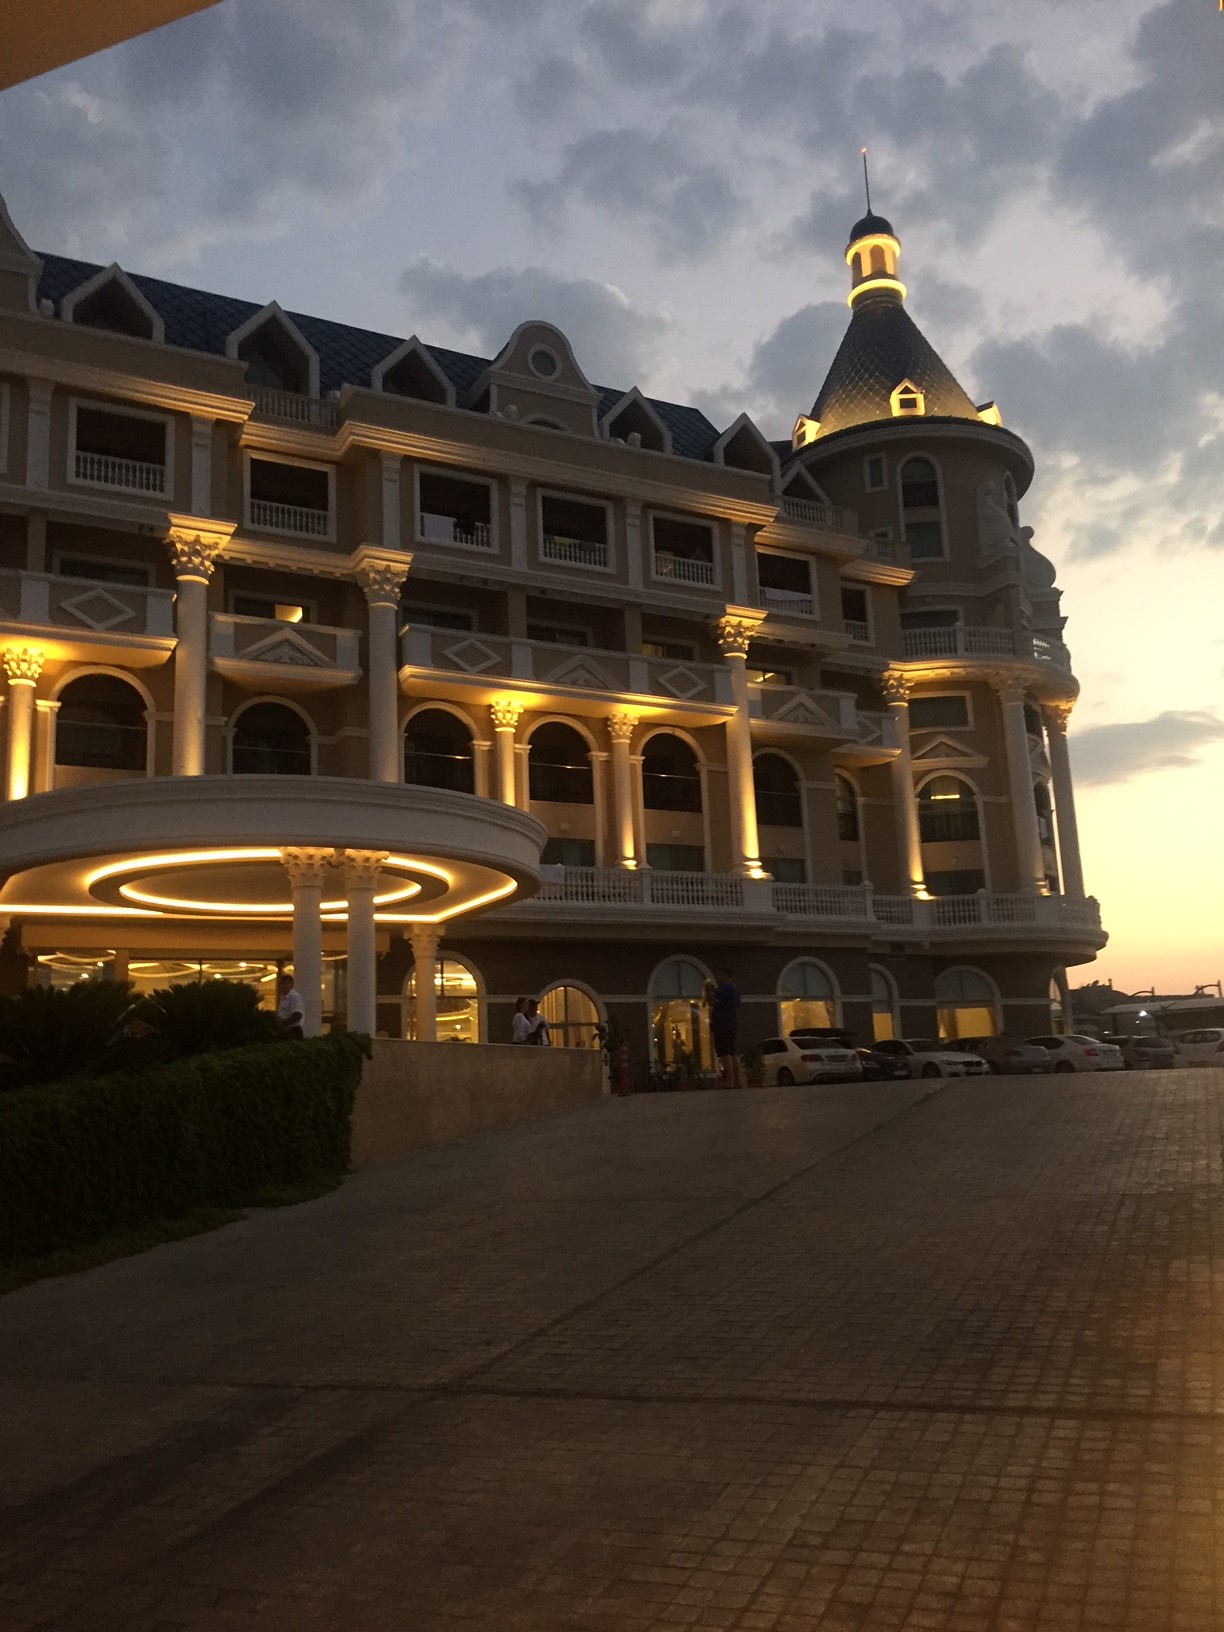 Haydarpasha Palace! Vores oplevelse og tips om hotellet Bolig Fritid | BYLOUISEVORRE blog